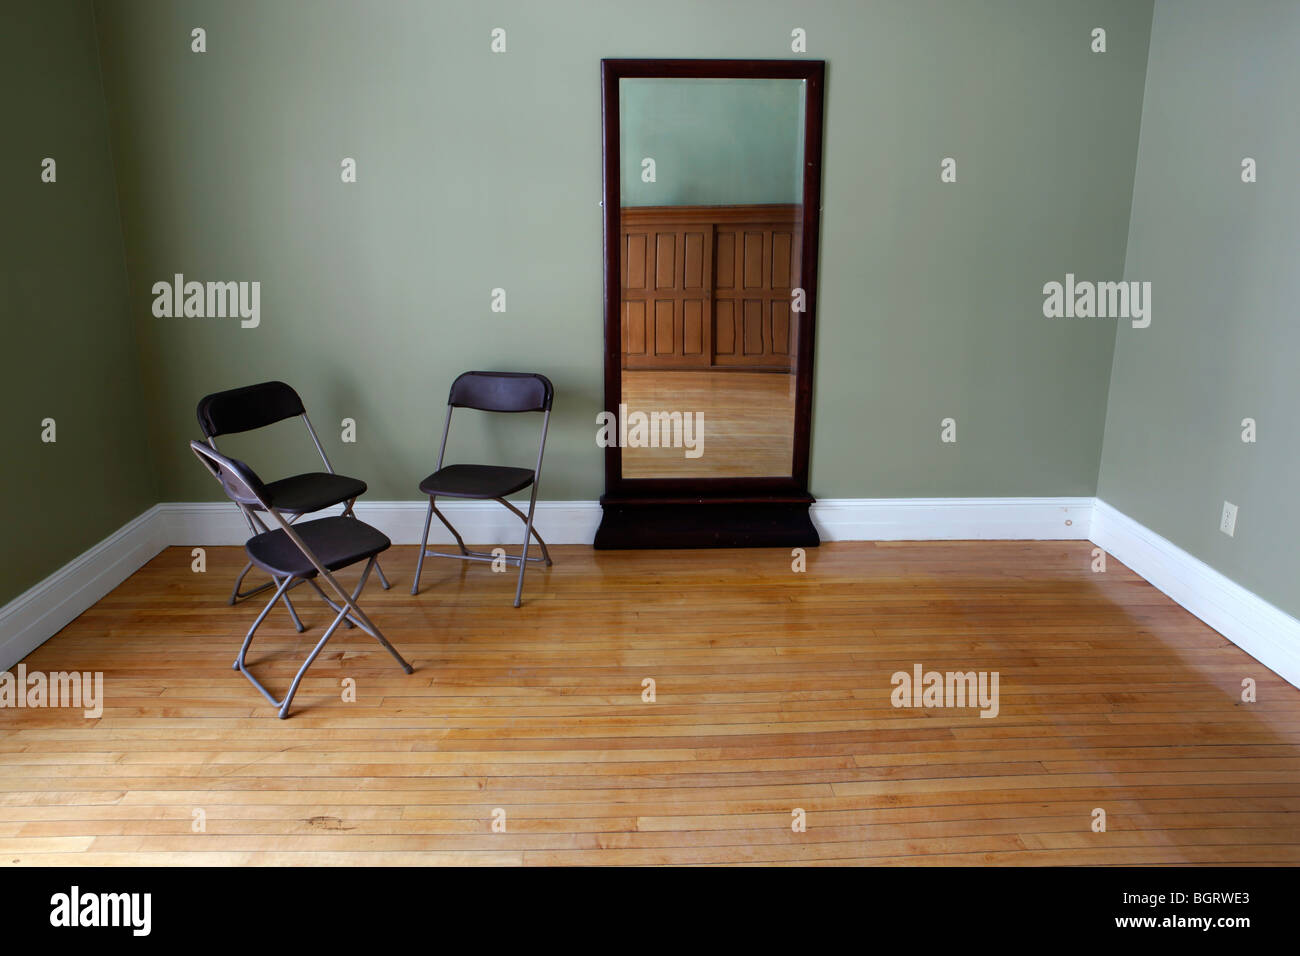 Stanza vuota, tre sedie pieghevoli, specchio, pavimenti in legno Foto Stock